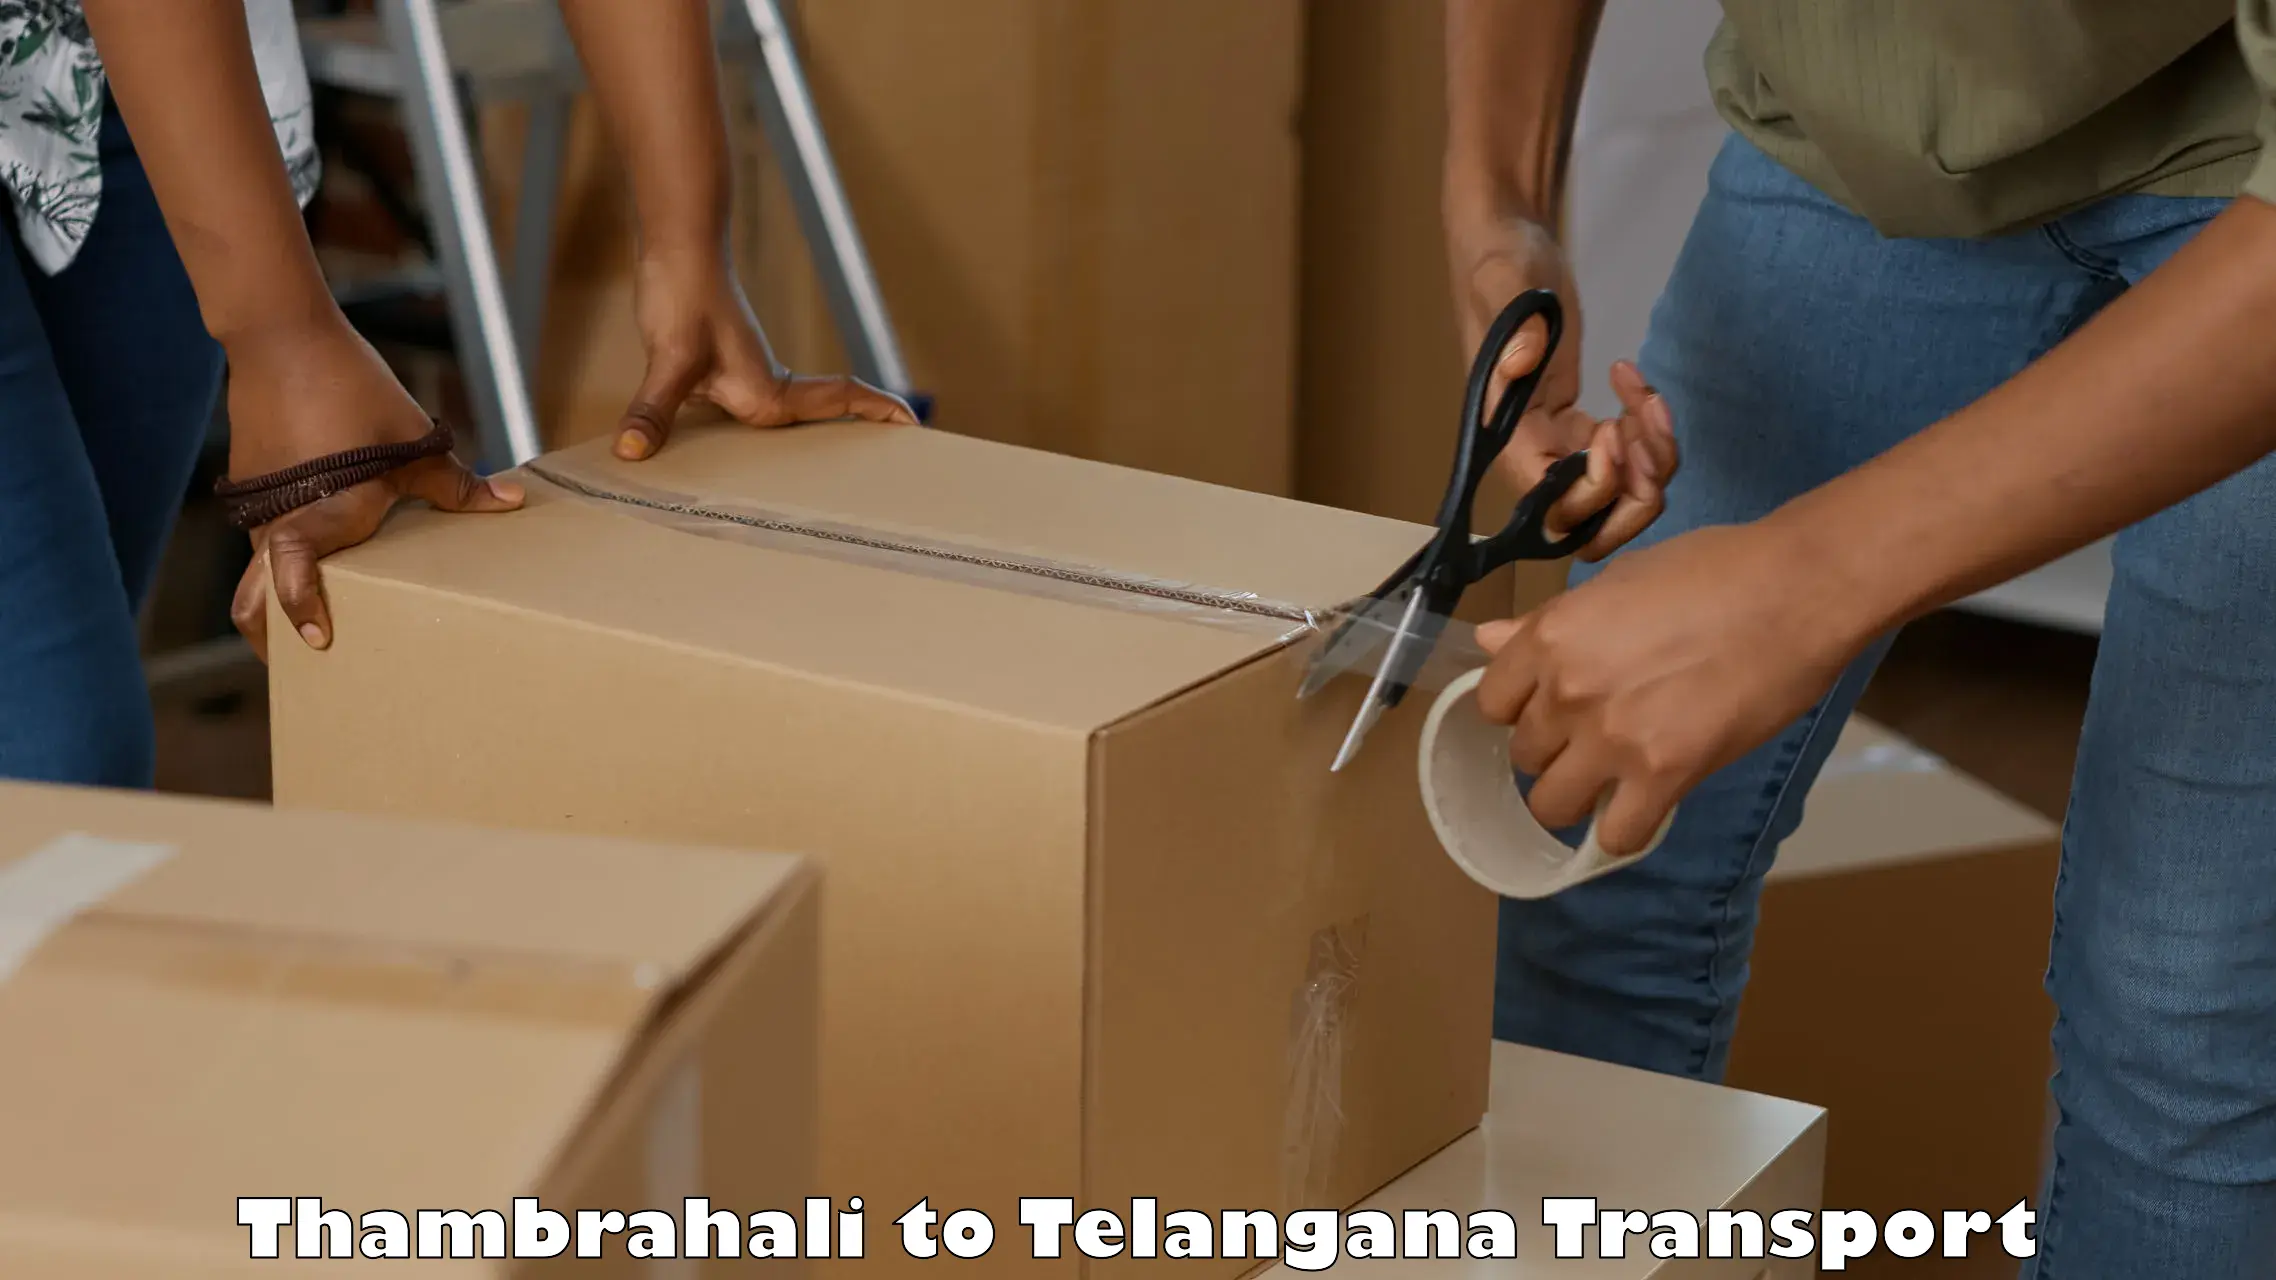 Express transport services Thambrahali to Telangana